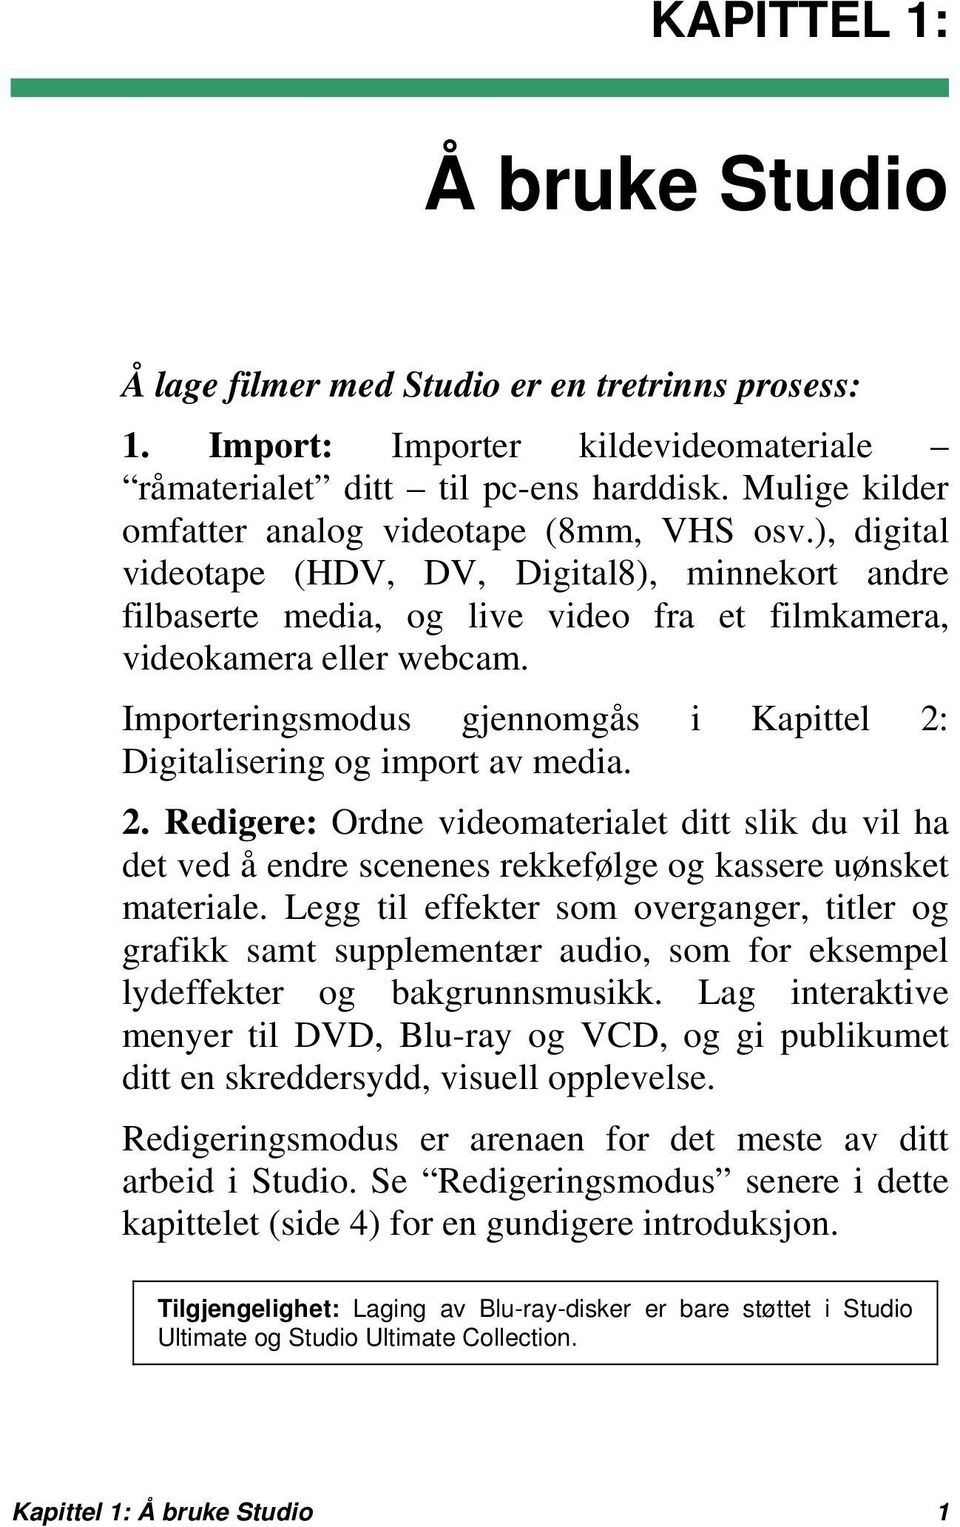 Importeringsmodus gjennomgås i Kapittel 2: Digitalisering og import av media. 2. Redigere: Ordne videomaterialet ditt slik du vil ha det ved å endre scenenes rekkefølge og kassere uønsket materiale.